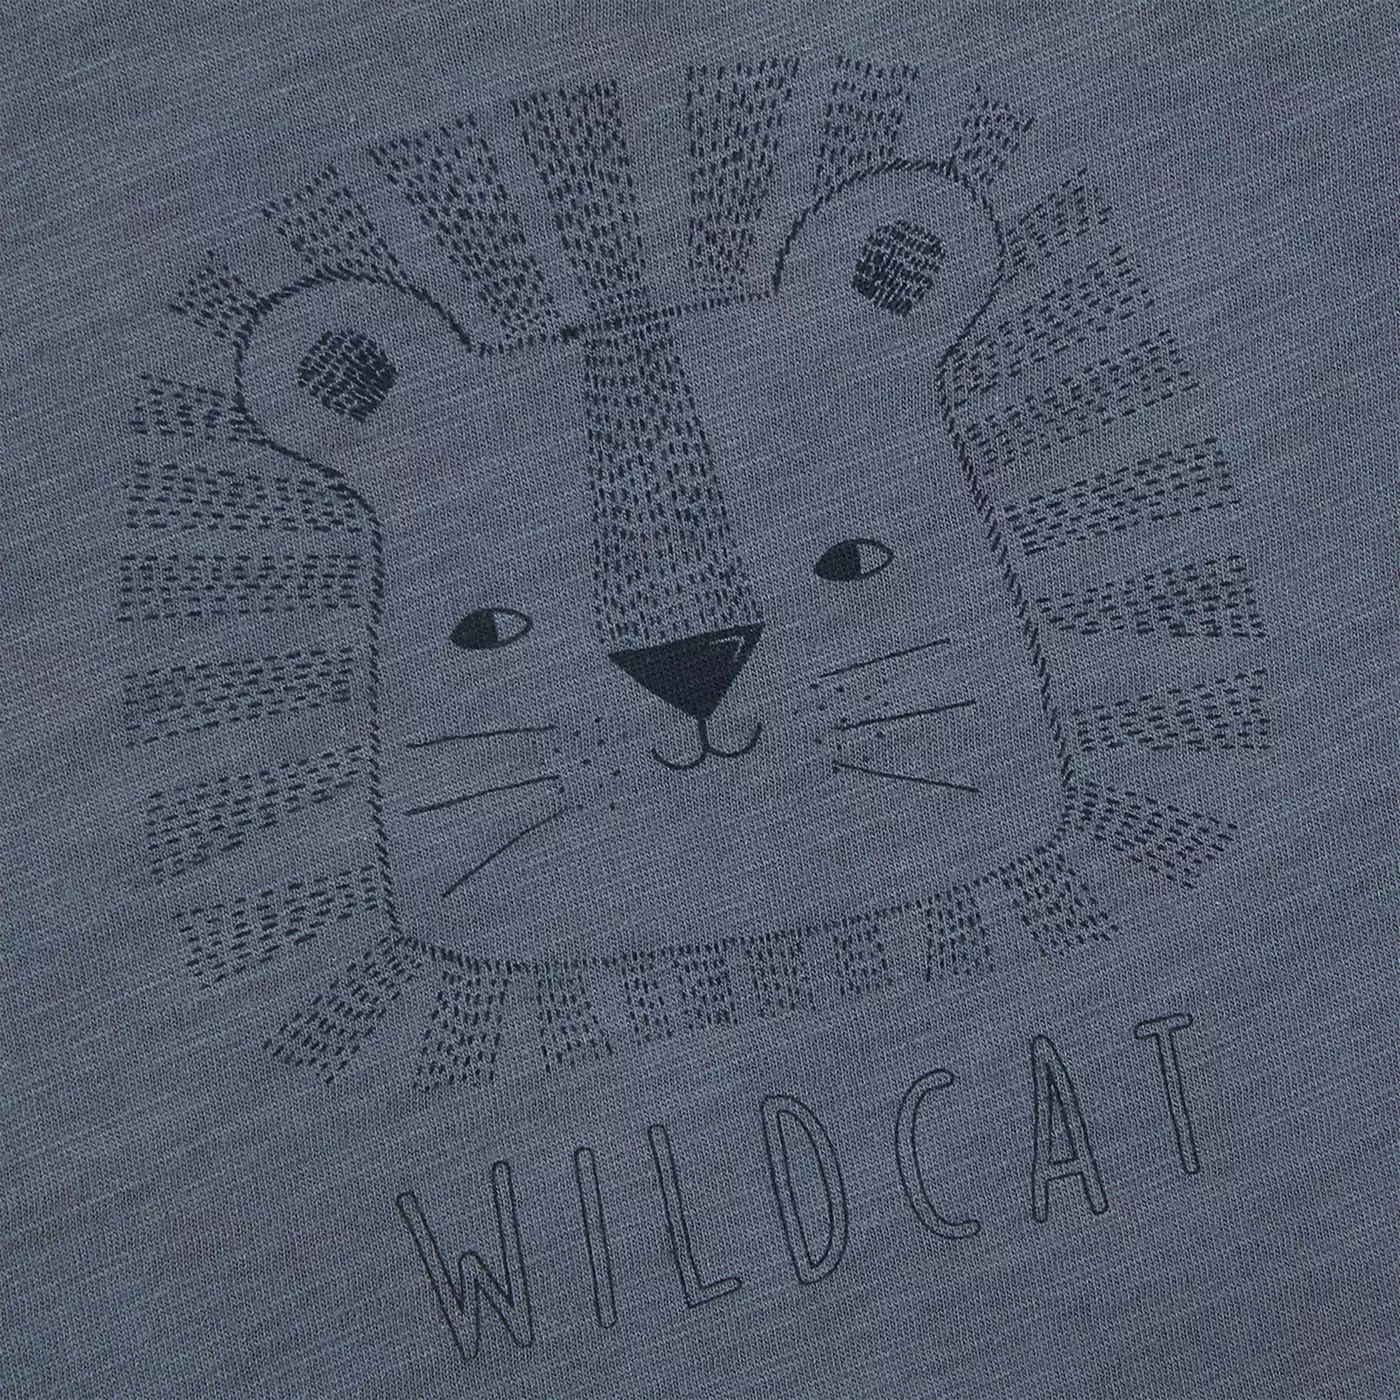 T-Shirt Wildcat LITTLE Blau 2006579675401 7